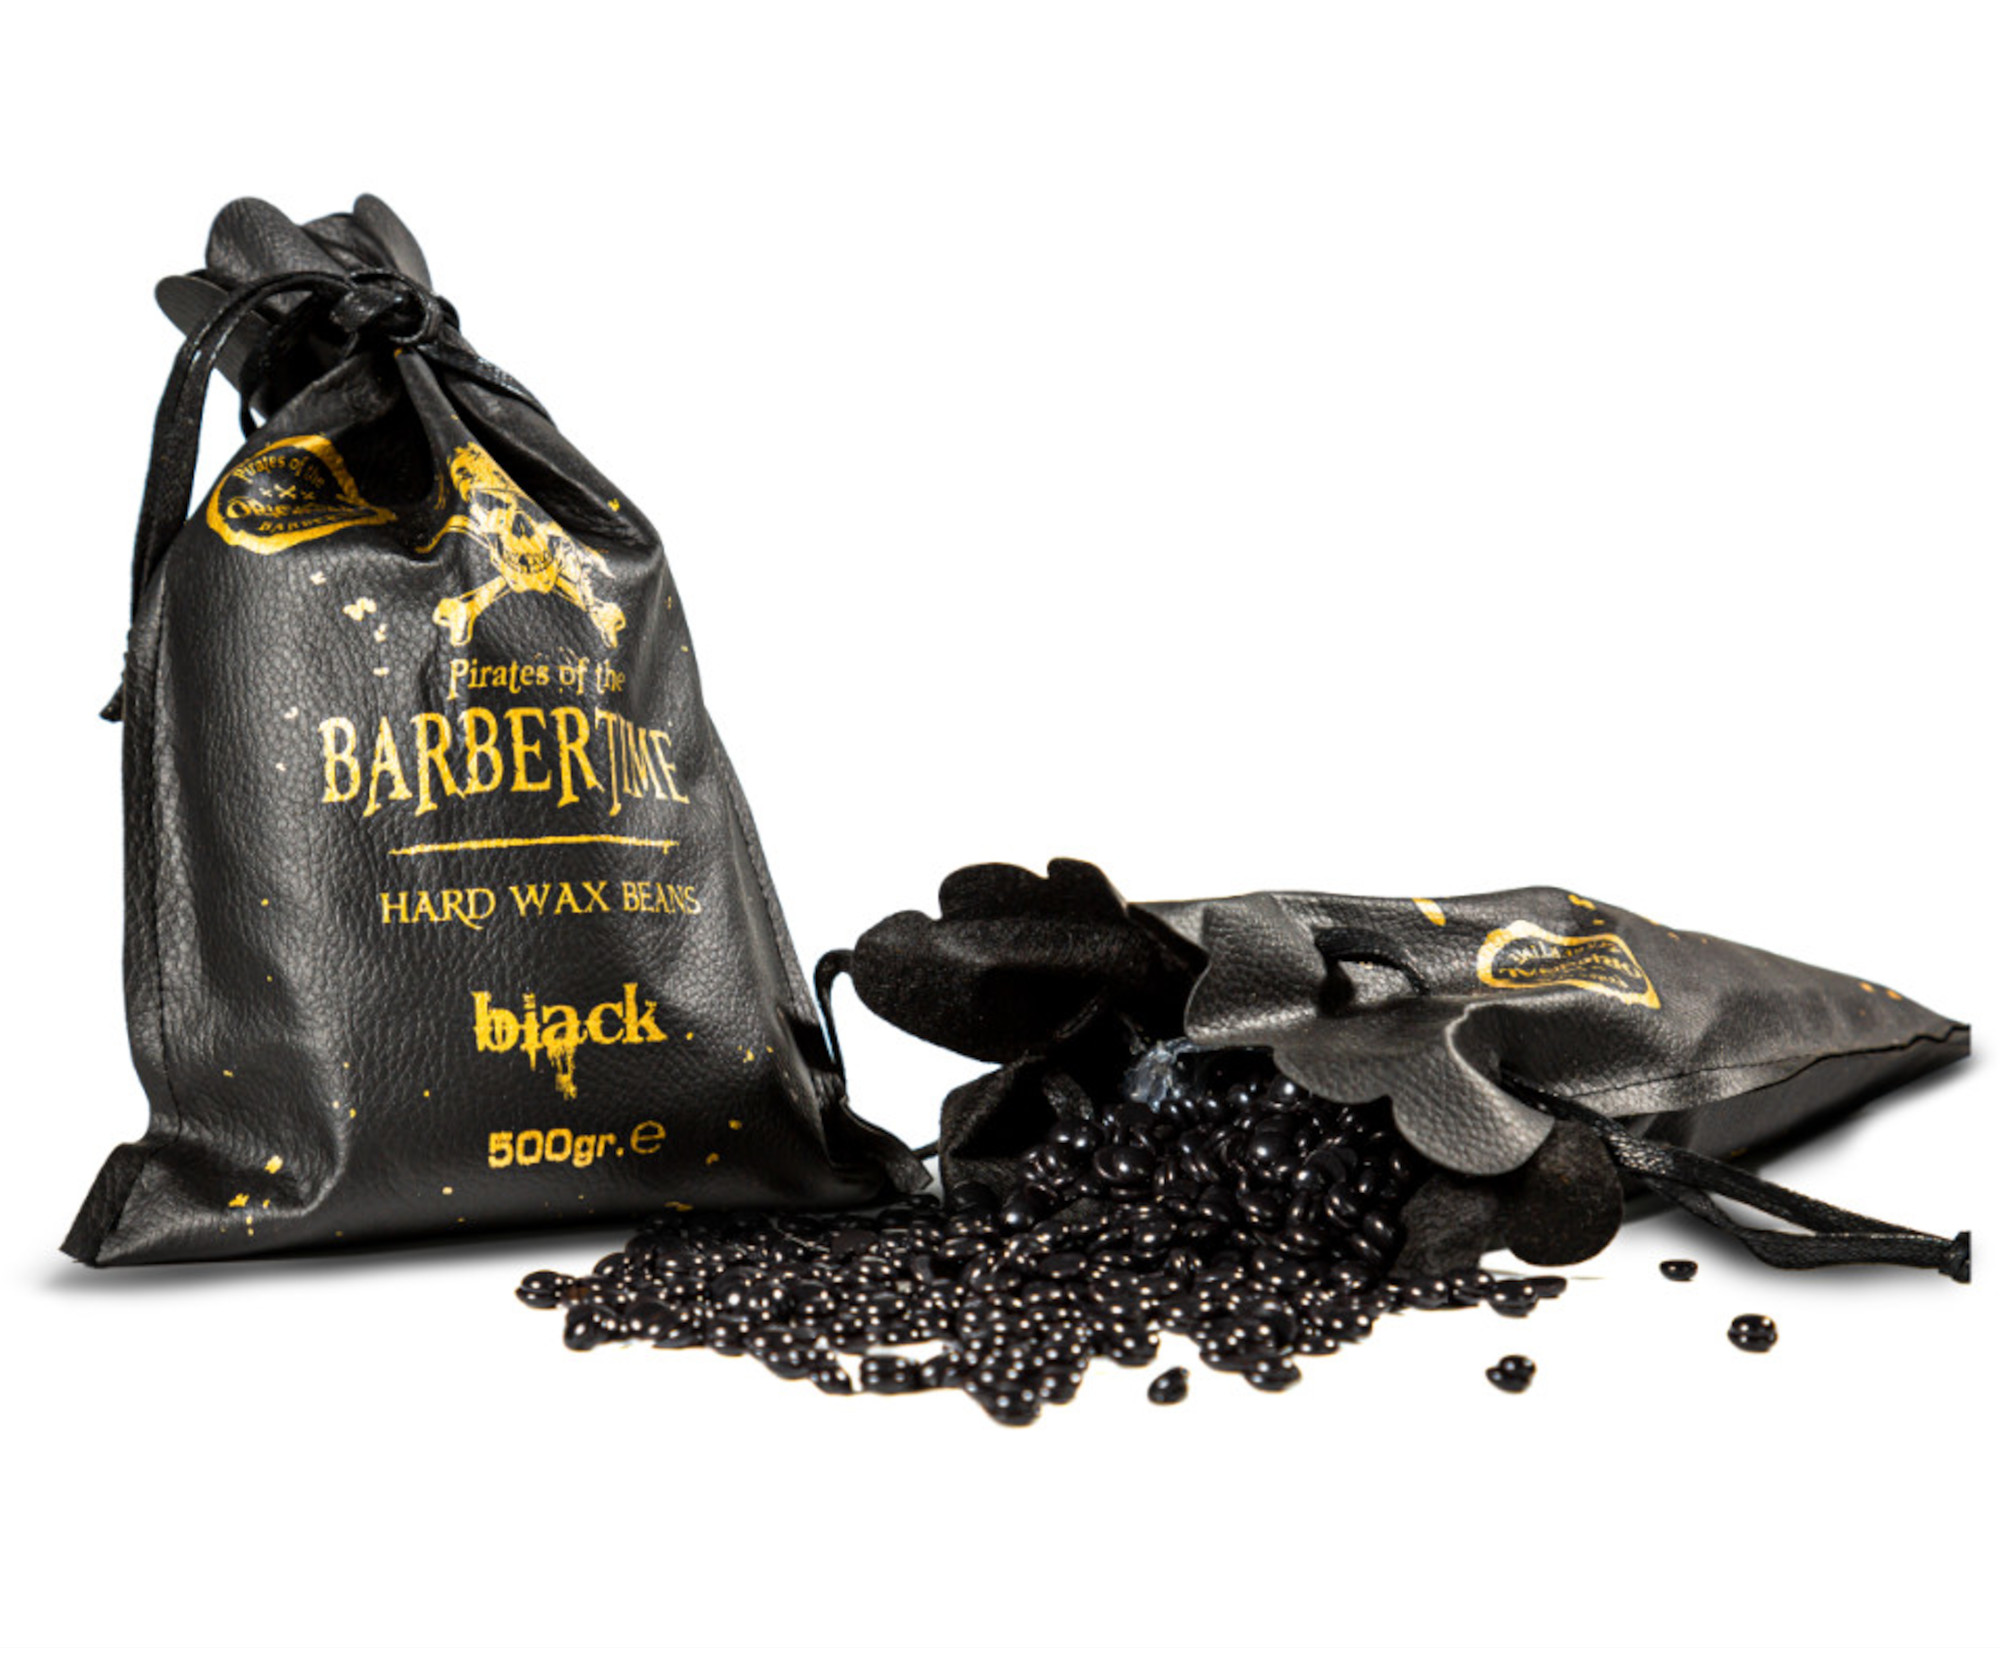 Depilační vosk pro muže Pirates of the Barbertime Hard Wax Beans Black - černý, 500 g + dárek zdarma